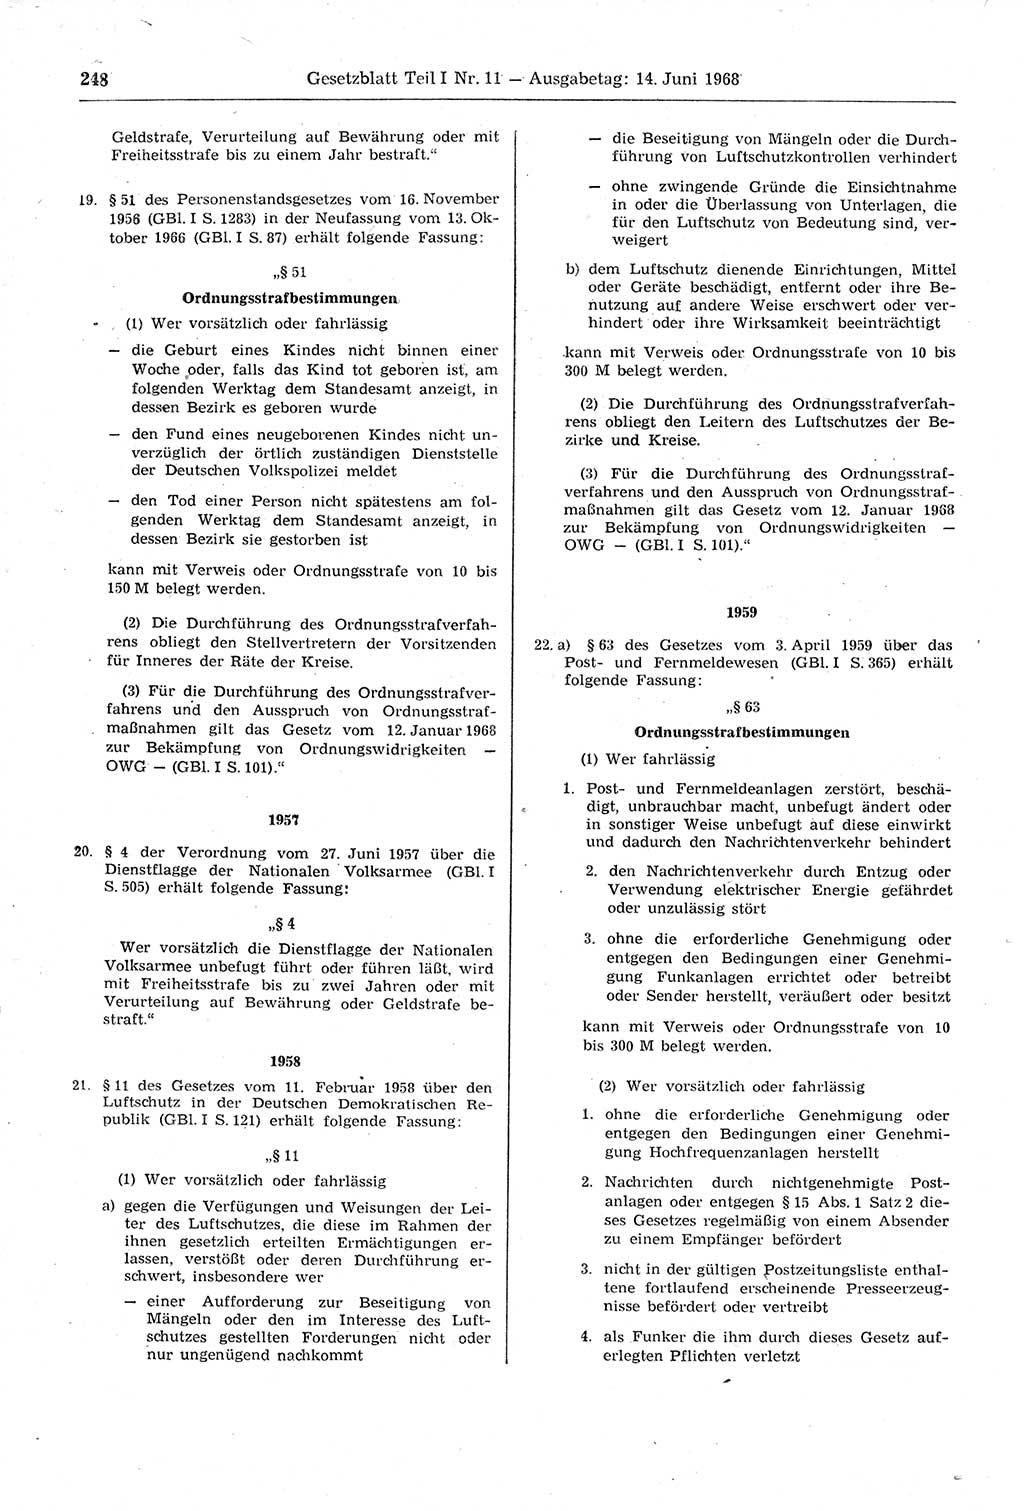 Gesetzblatt (GBl.) der Deutschen Demokratischen Republik (DDR) Teil Ⅰ 1968, Seite 248 (GBl. DDR Ⅰ 1968, S. 248)